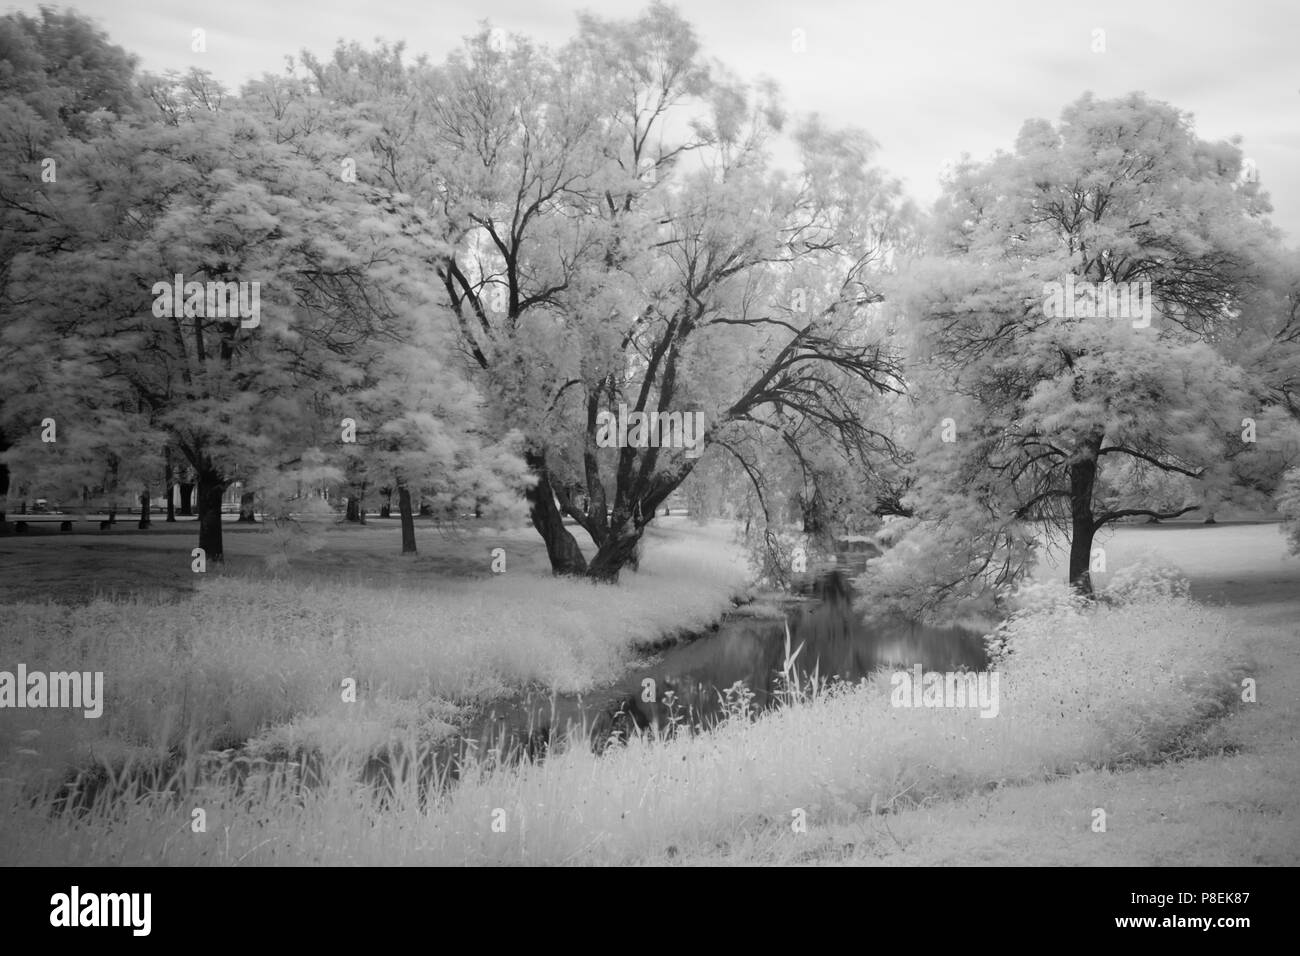 Eine märchenhafte, schwarz-weiße, lange Aufnahme von Bäumen und Kanal in einem Park mit Bewegung in den Zweigen und Blättern. Stockfoto